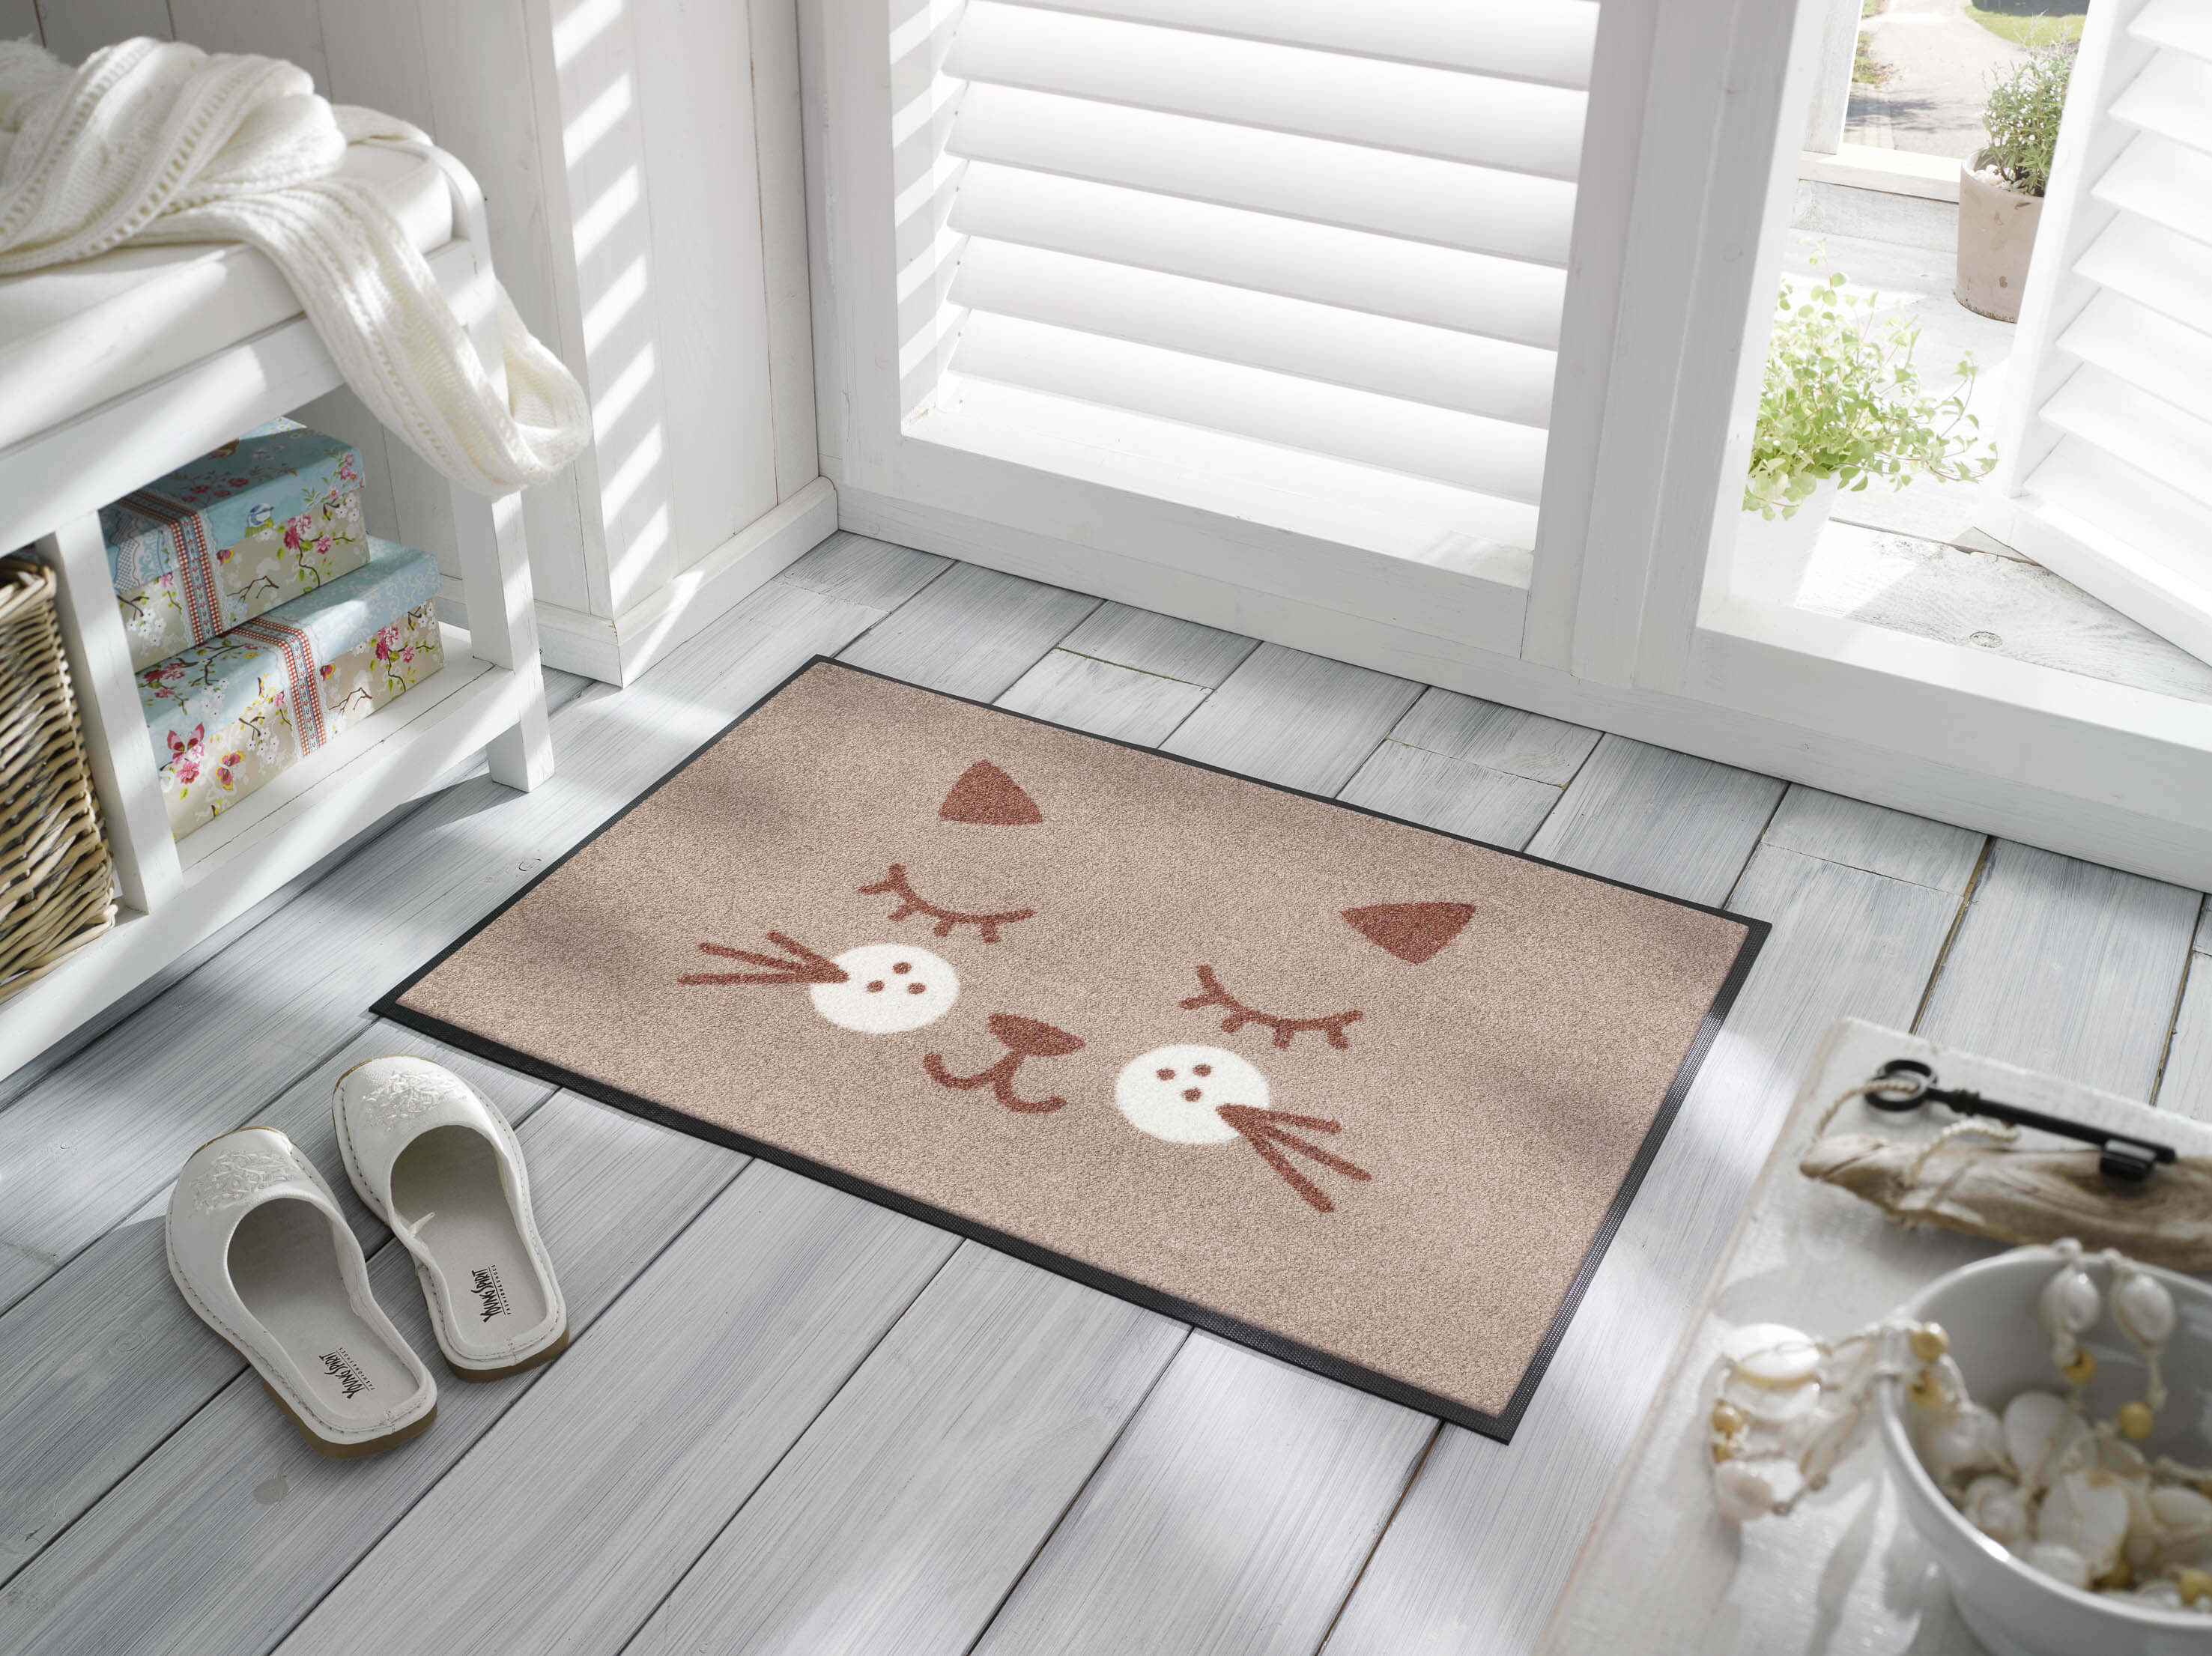 Missy Fußmatte, Katzenmotiv braun /weiß, 50 x 75 cm, Interieurbild